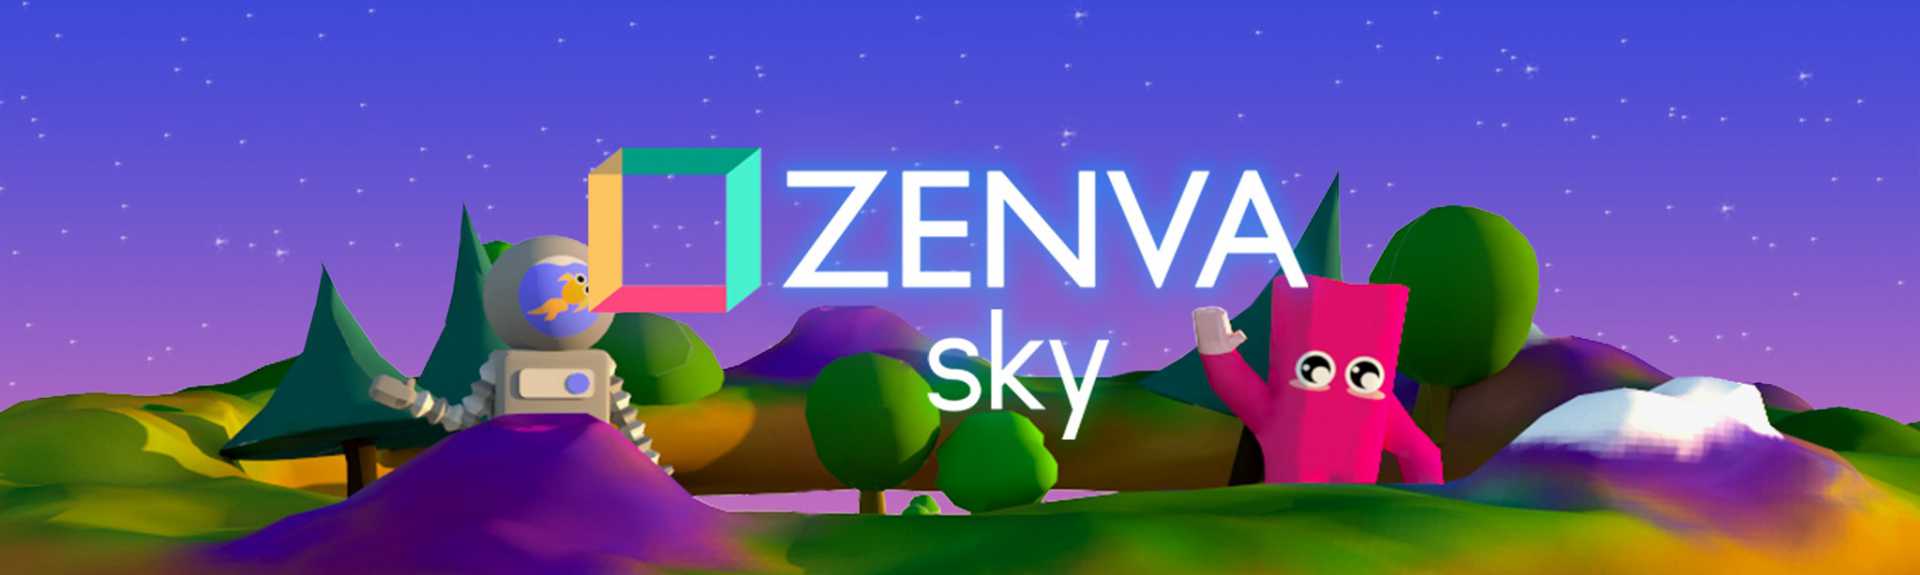 Zenva Sky